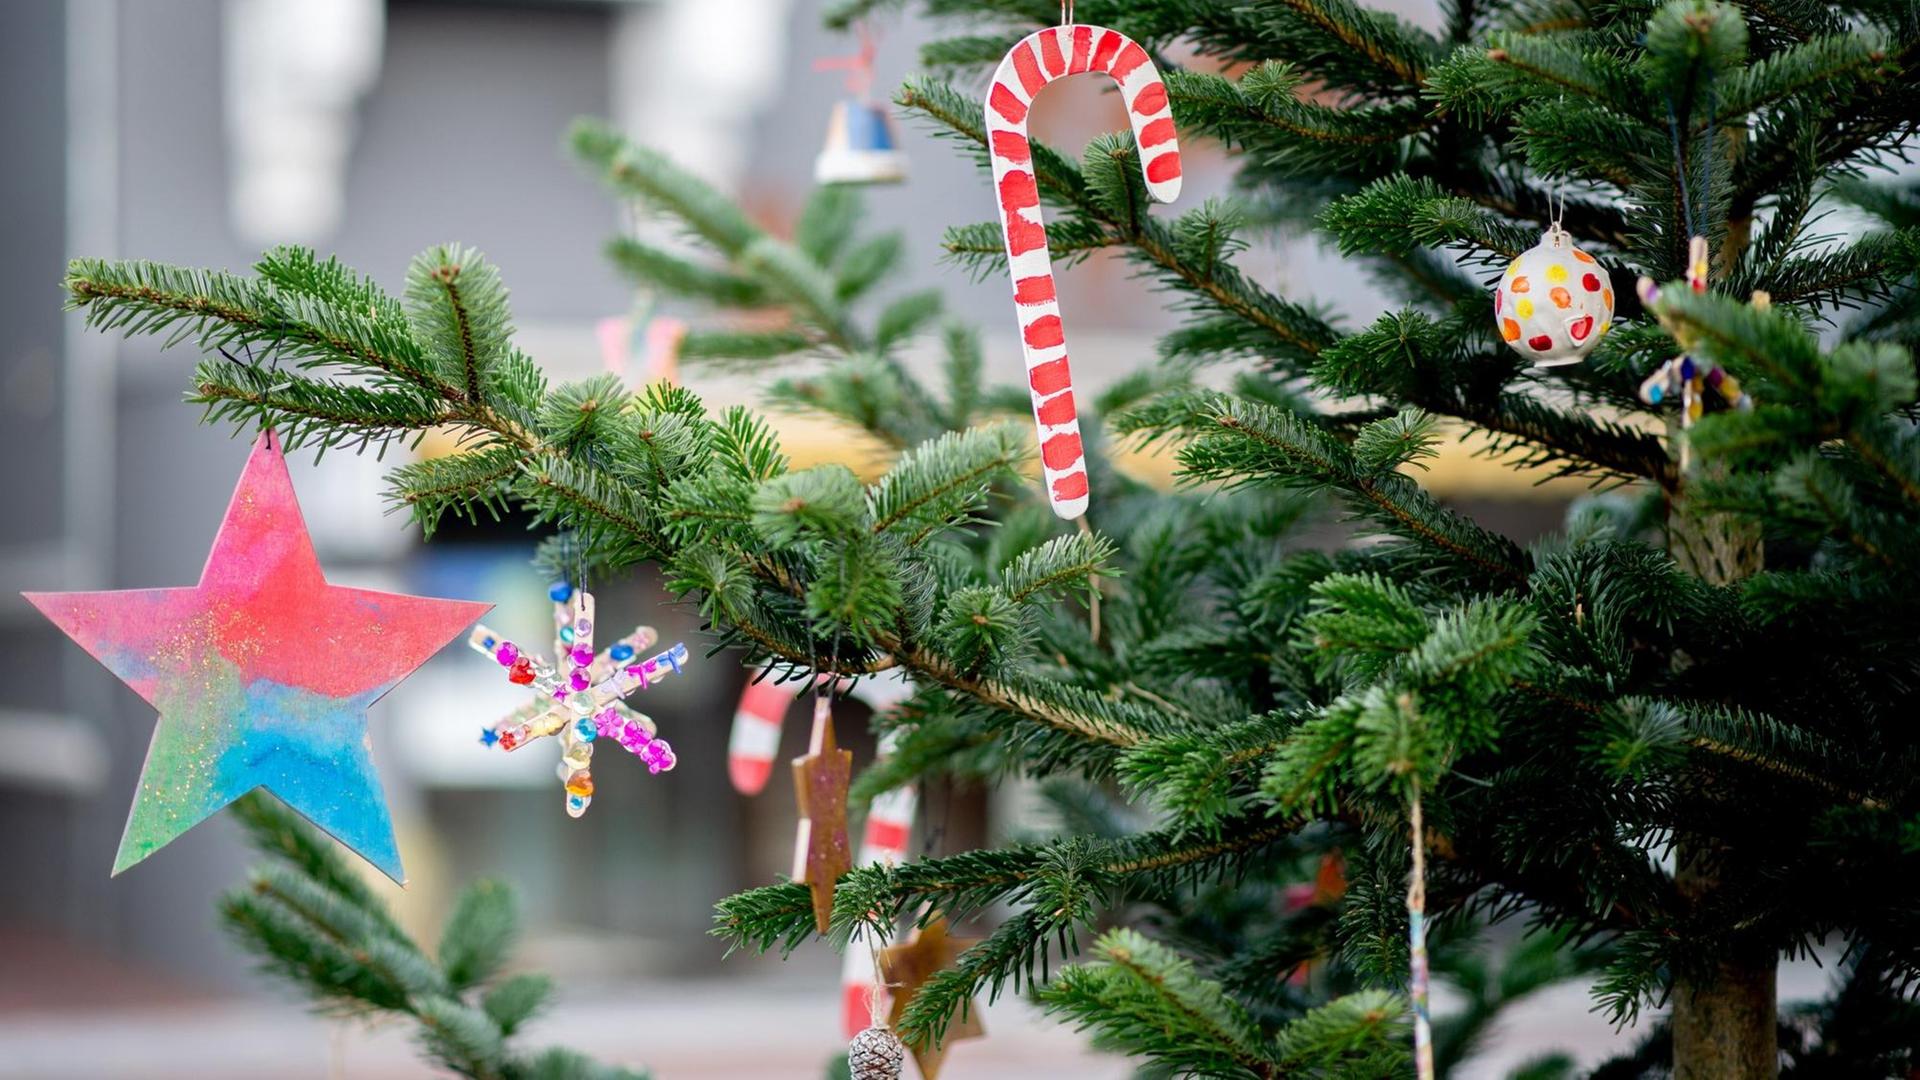 Weihnachtliche Dekoration mit Sternen hängt an einem Tannenbaum